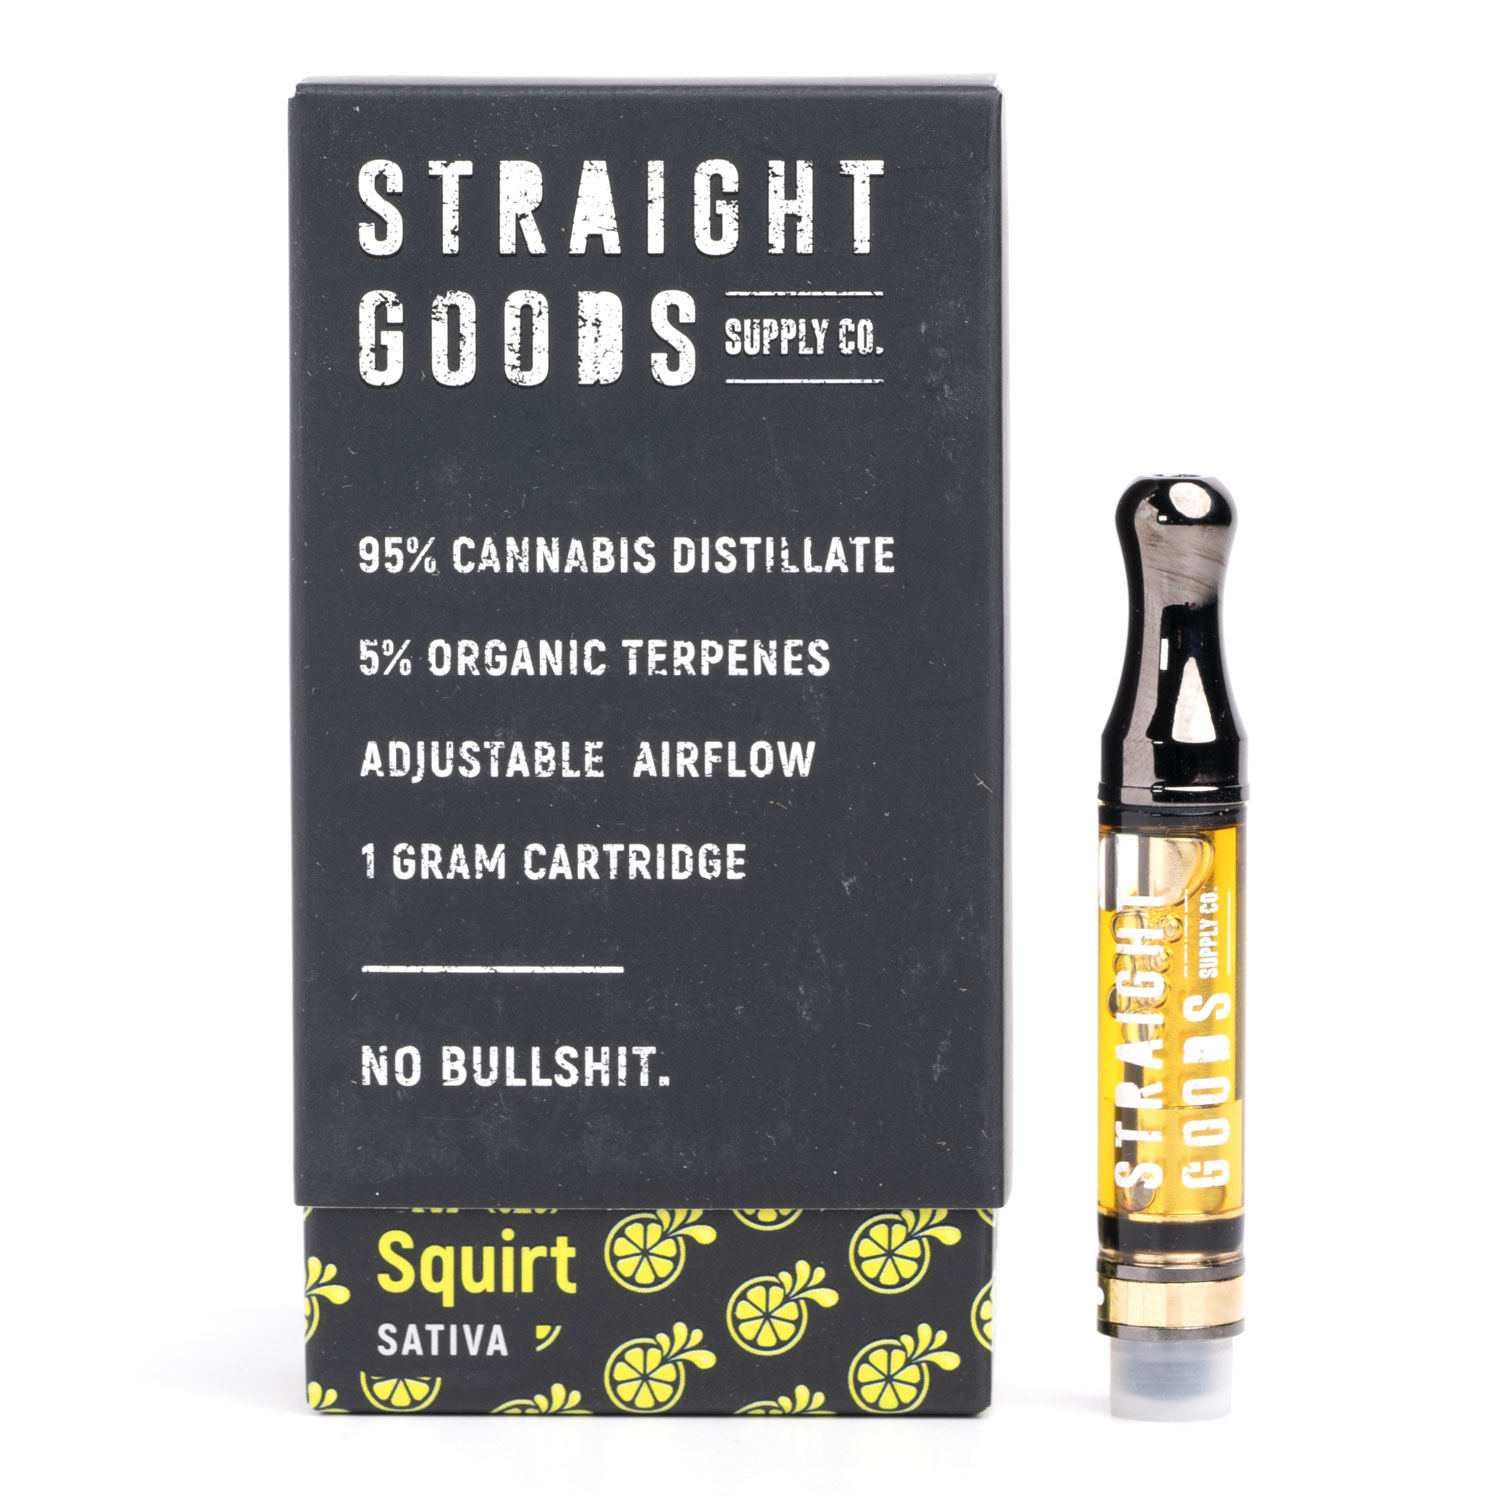 Striaght Goods vaporizer cartridges